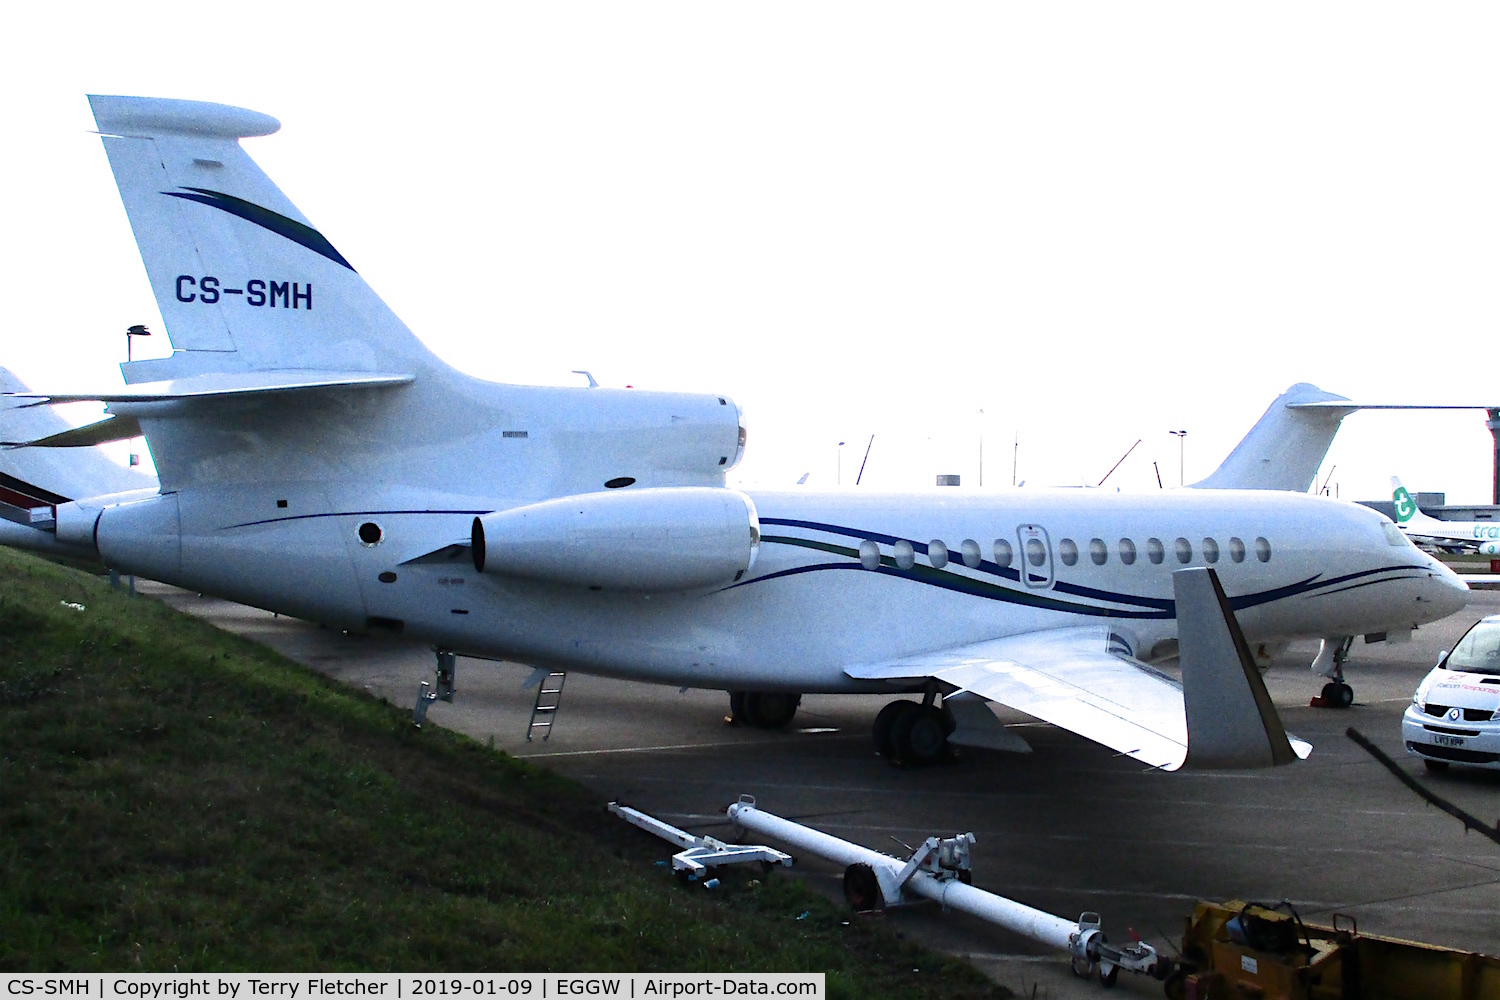 CS-SMH, 2008 Dassault Falcon 7X C/N 41, at Luton